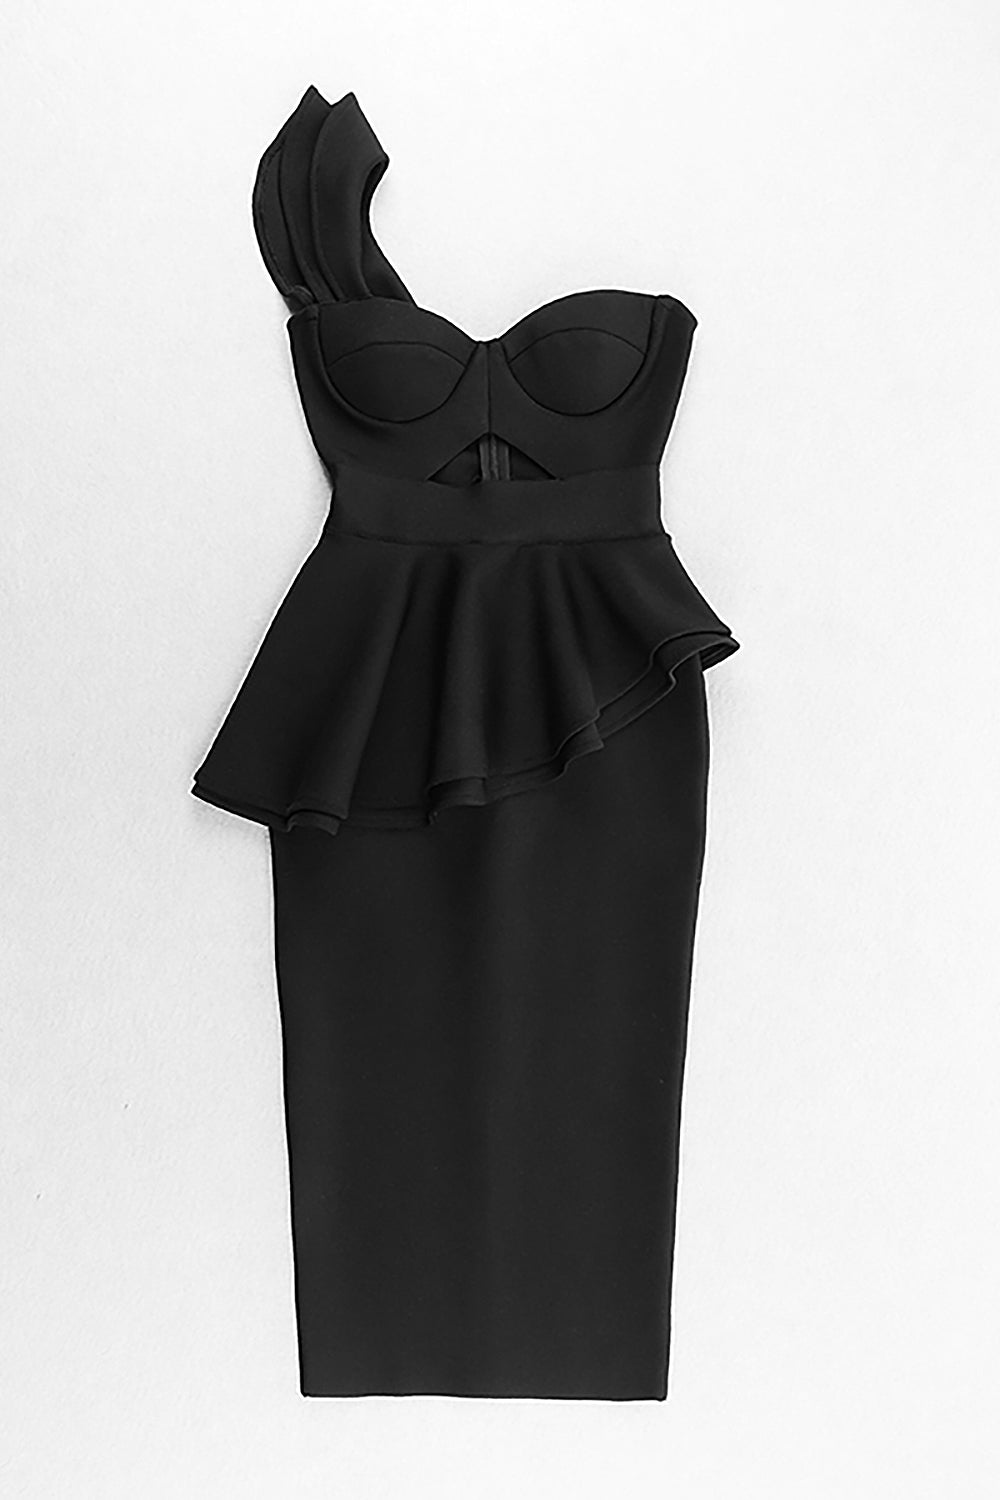 Black One-Shoulder Ruffle Hollow Bandage Dress